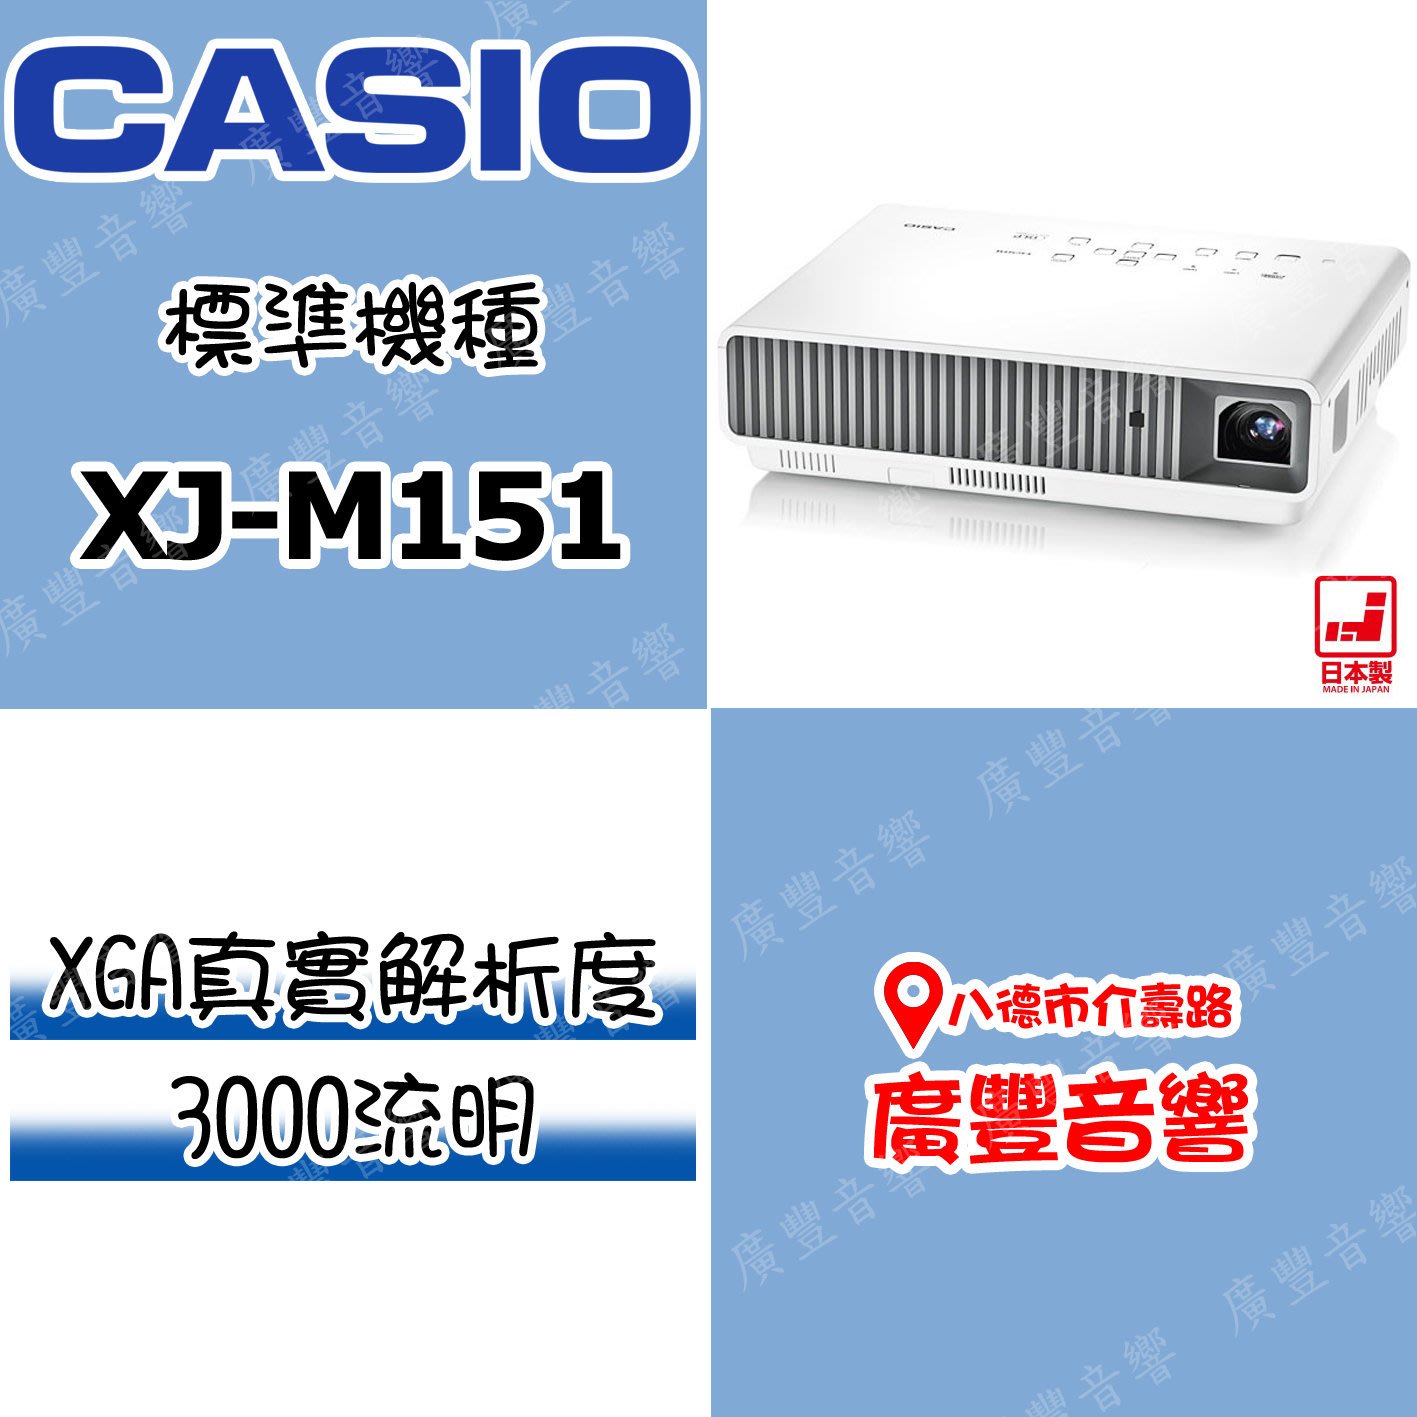 桃園八德 廣豐音響屋 Xj M151 Casio卡西歐3000流明標準型投影機 Yahoo奇摩拍賣